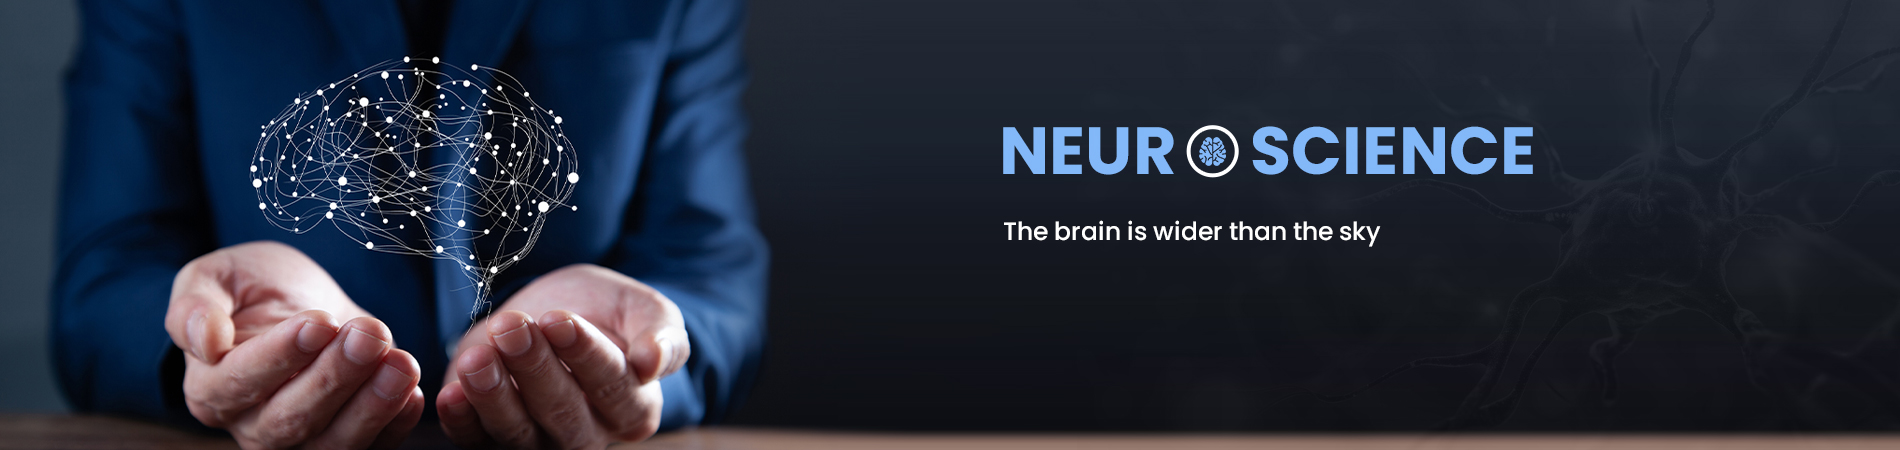 neuroscience-banner